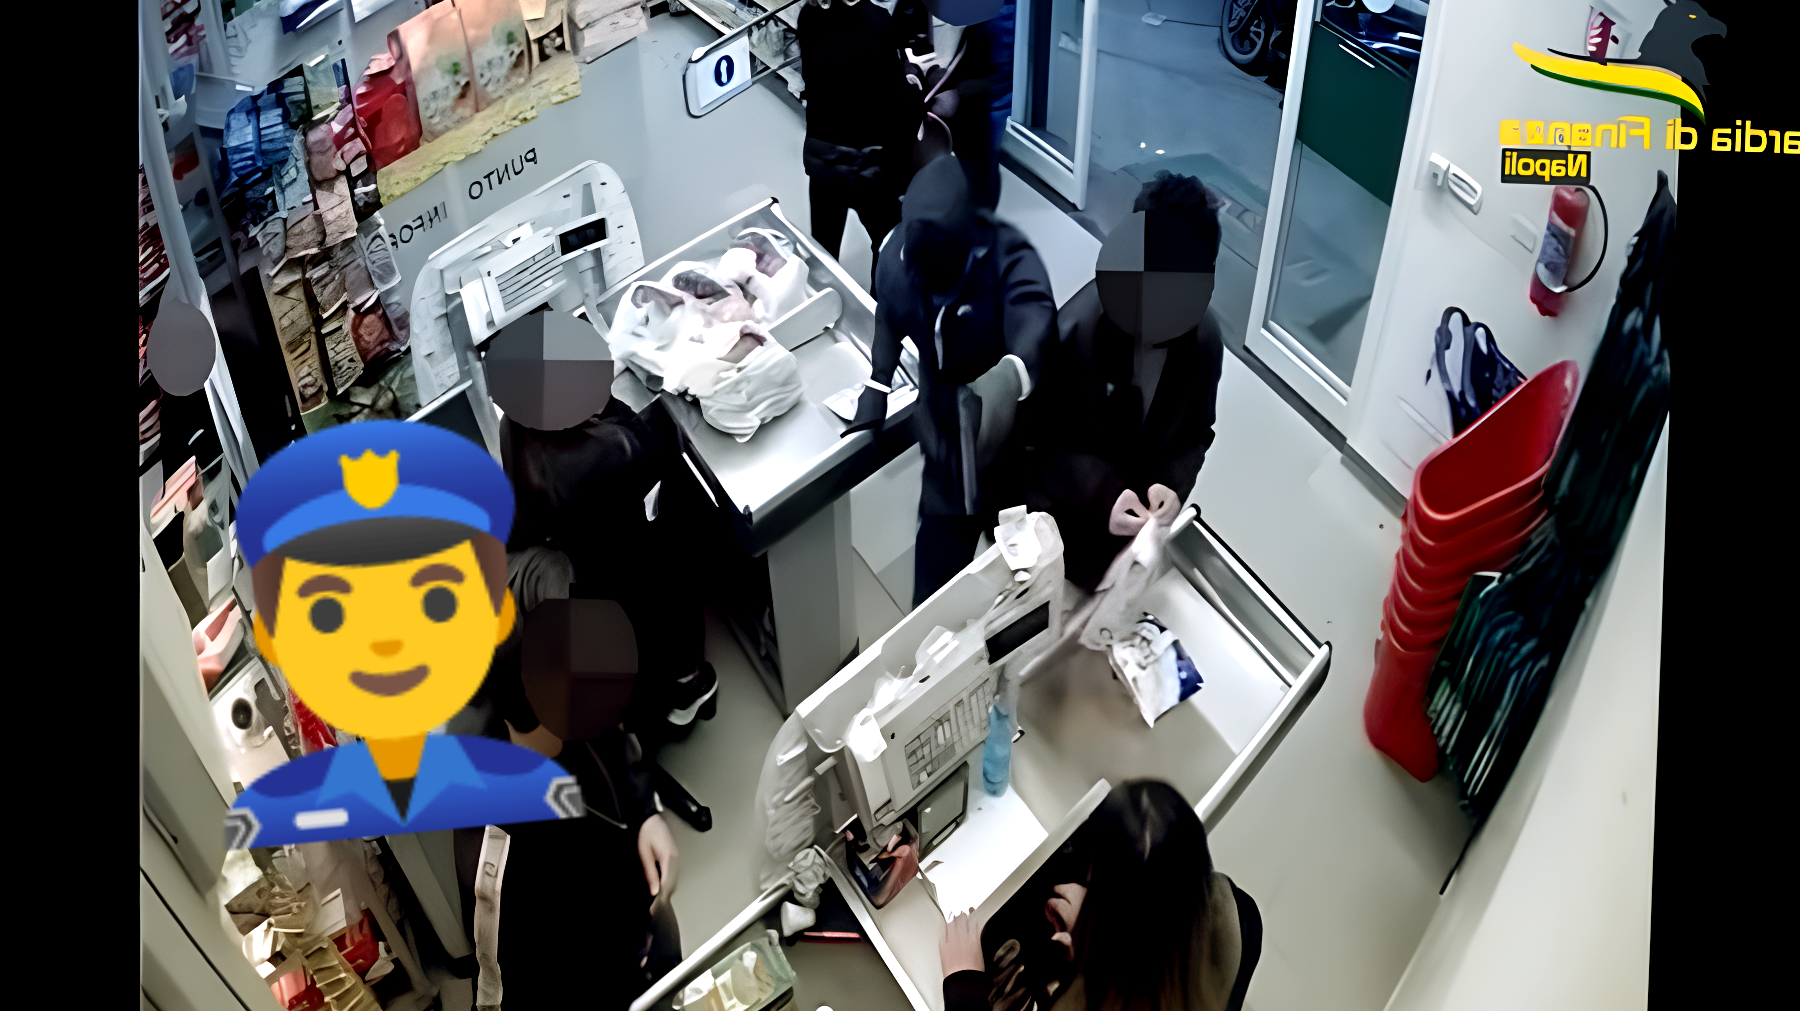 Eroe in divisa: finanziere affronta rapinatore armato e salva il supermercato - Le immagini sono da brivido